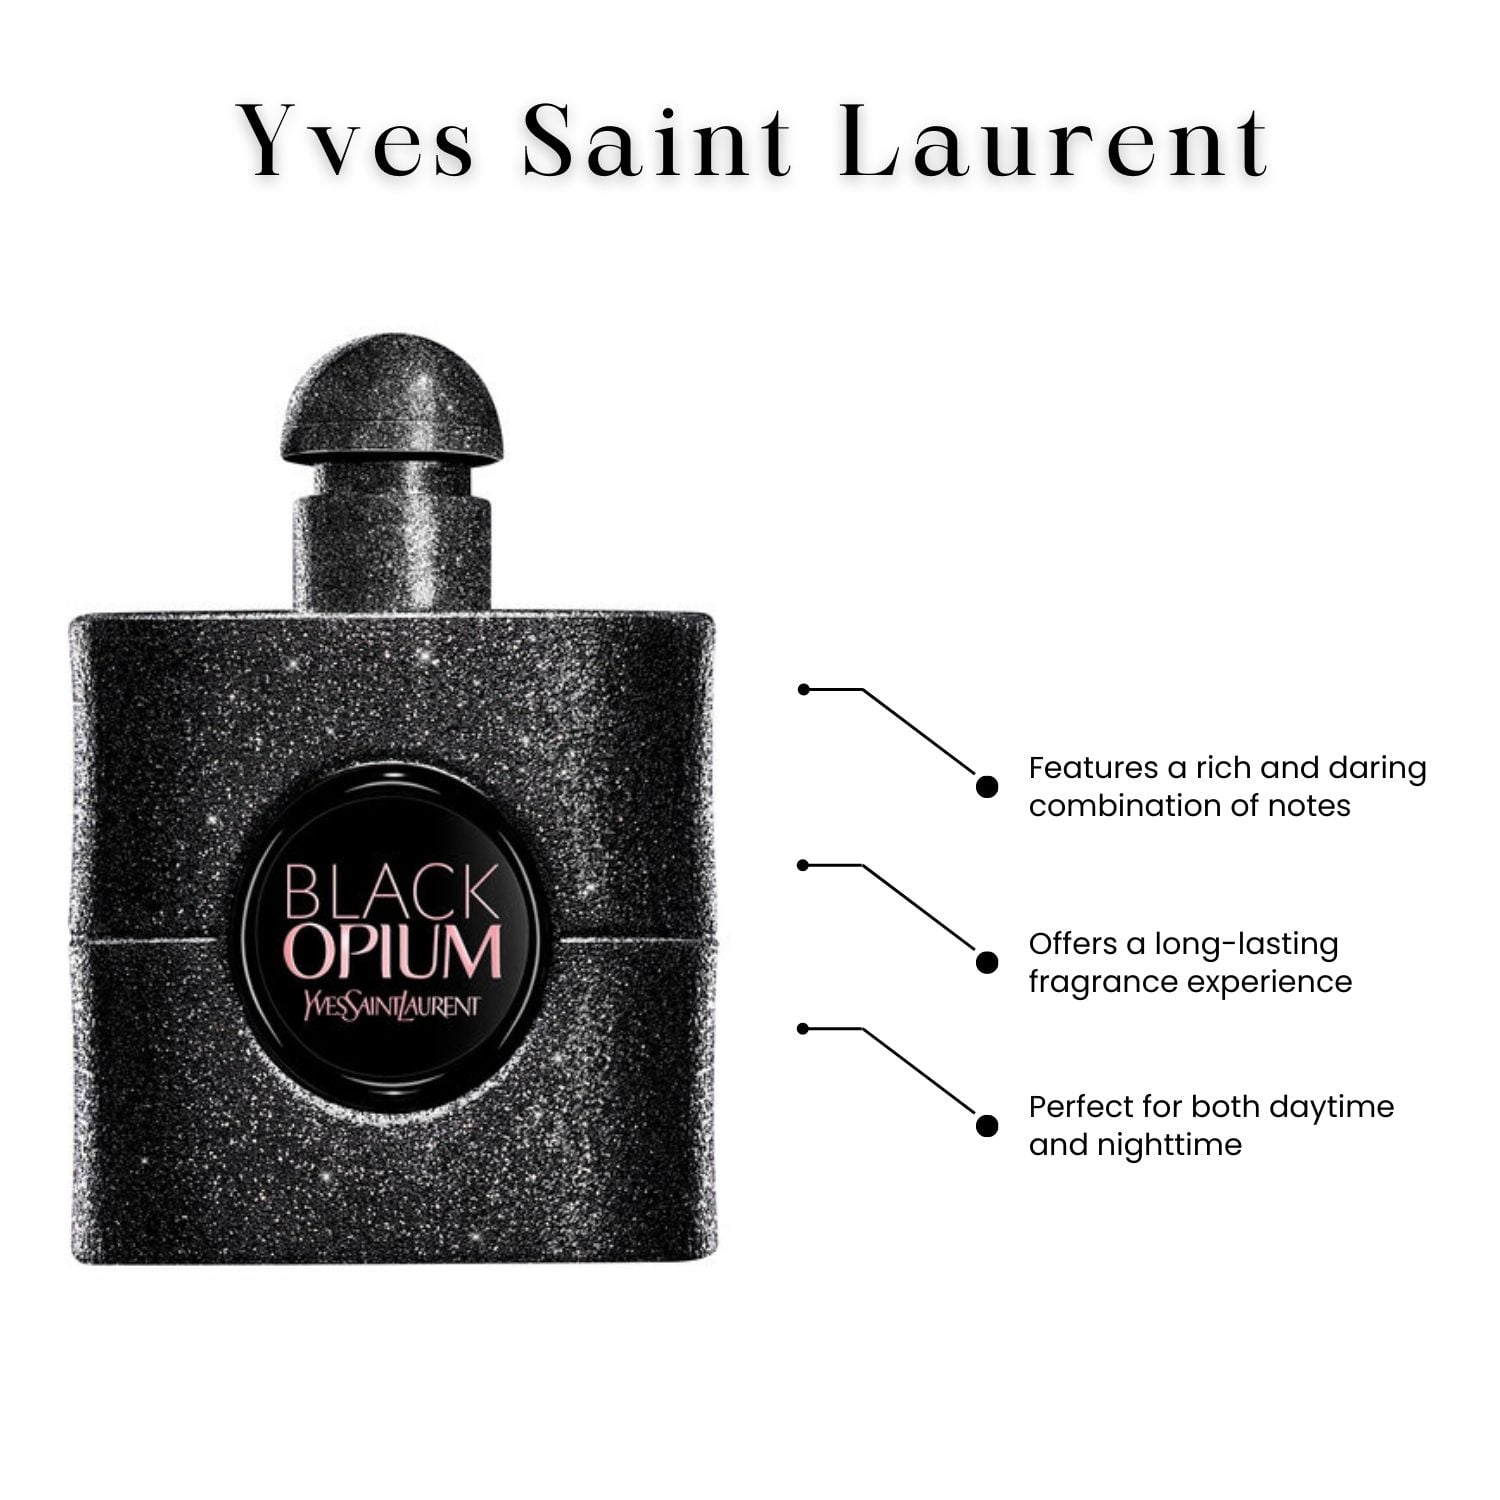  Yves Saint Laurent Black Opium Eau De Parfum Spray for Women  .33 oz. : Beauty & Personal Care